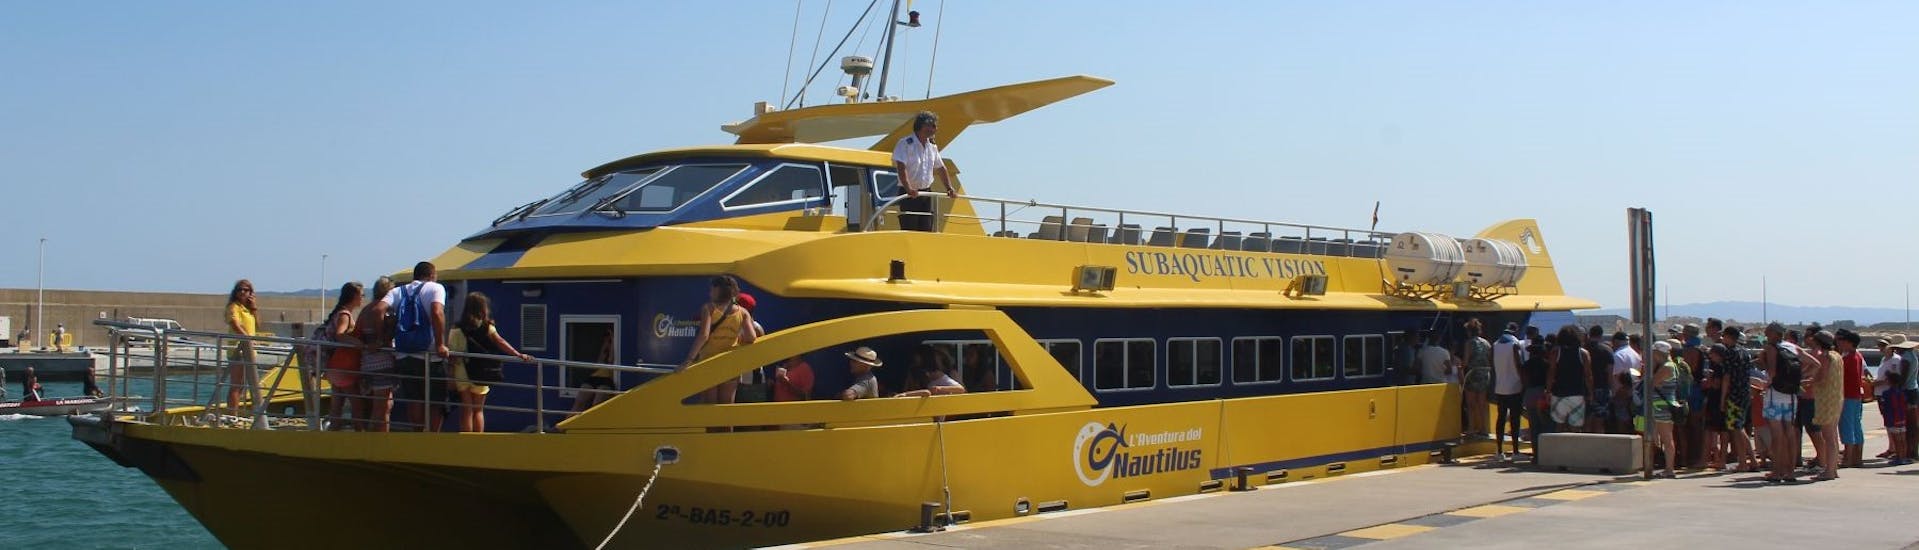 Le bateau utilisé lors de la Balade en bateau et bus le long de Costa Brava à l'Estartit, Empúries & aux îles Medes.